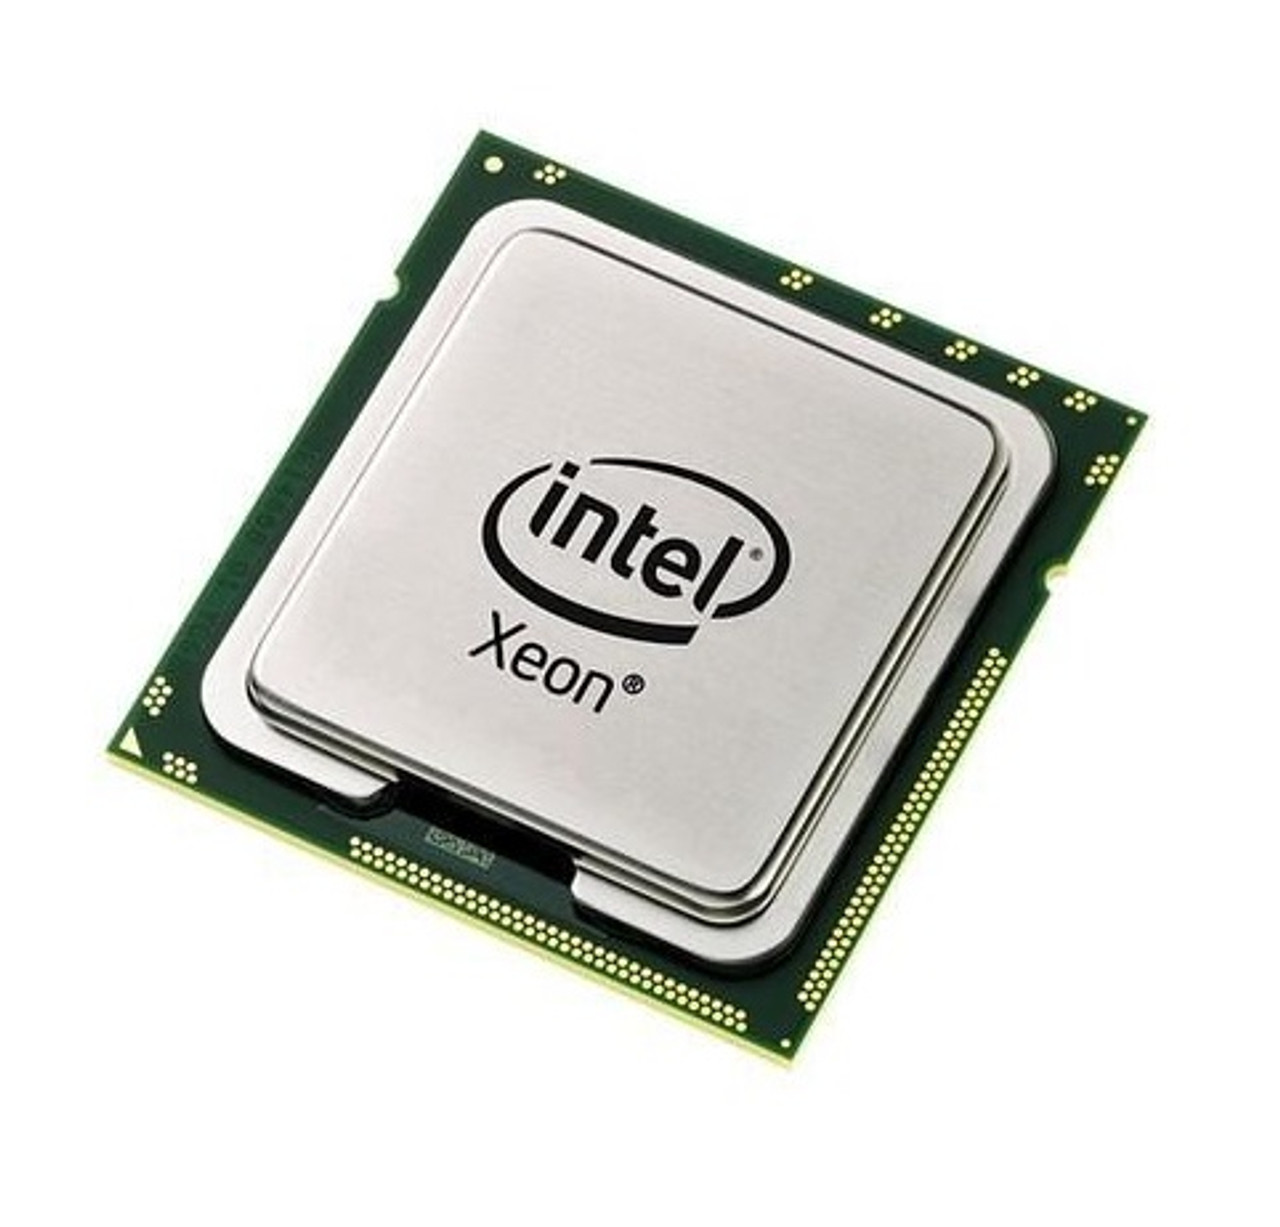 5080 - Intel Xeon 5080 Dual Core 3.73GHz 1066MHz FSB 4MB L2 Cache Processor